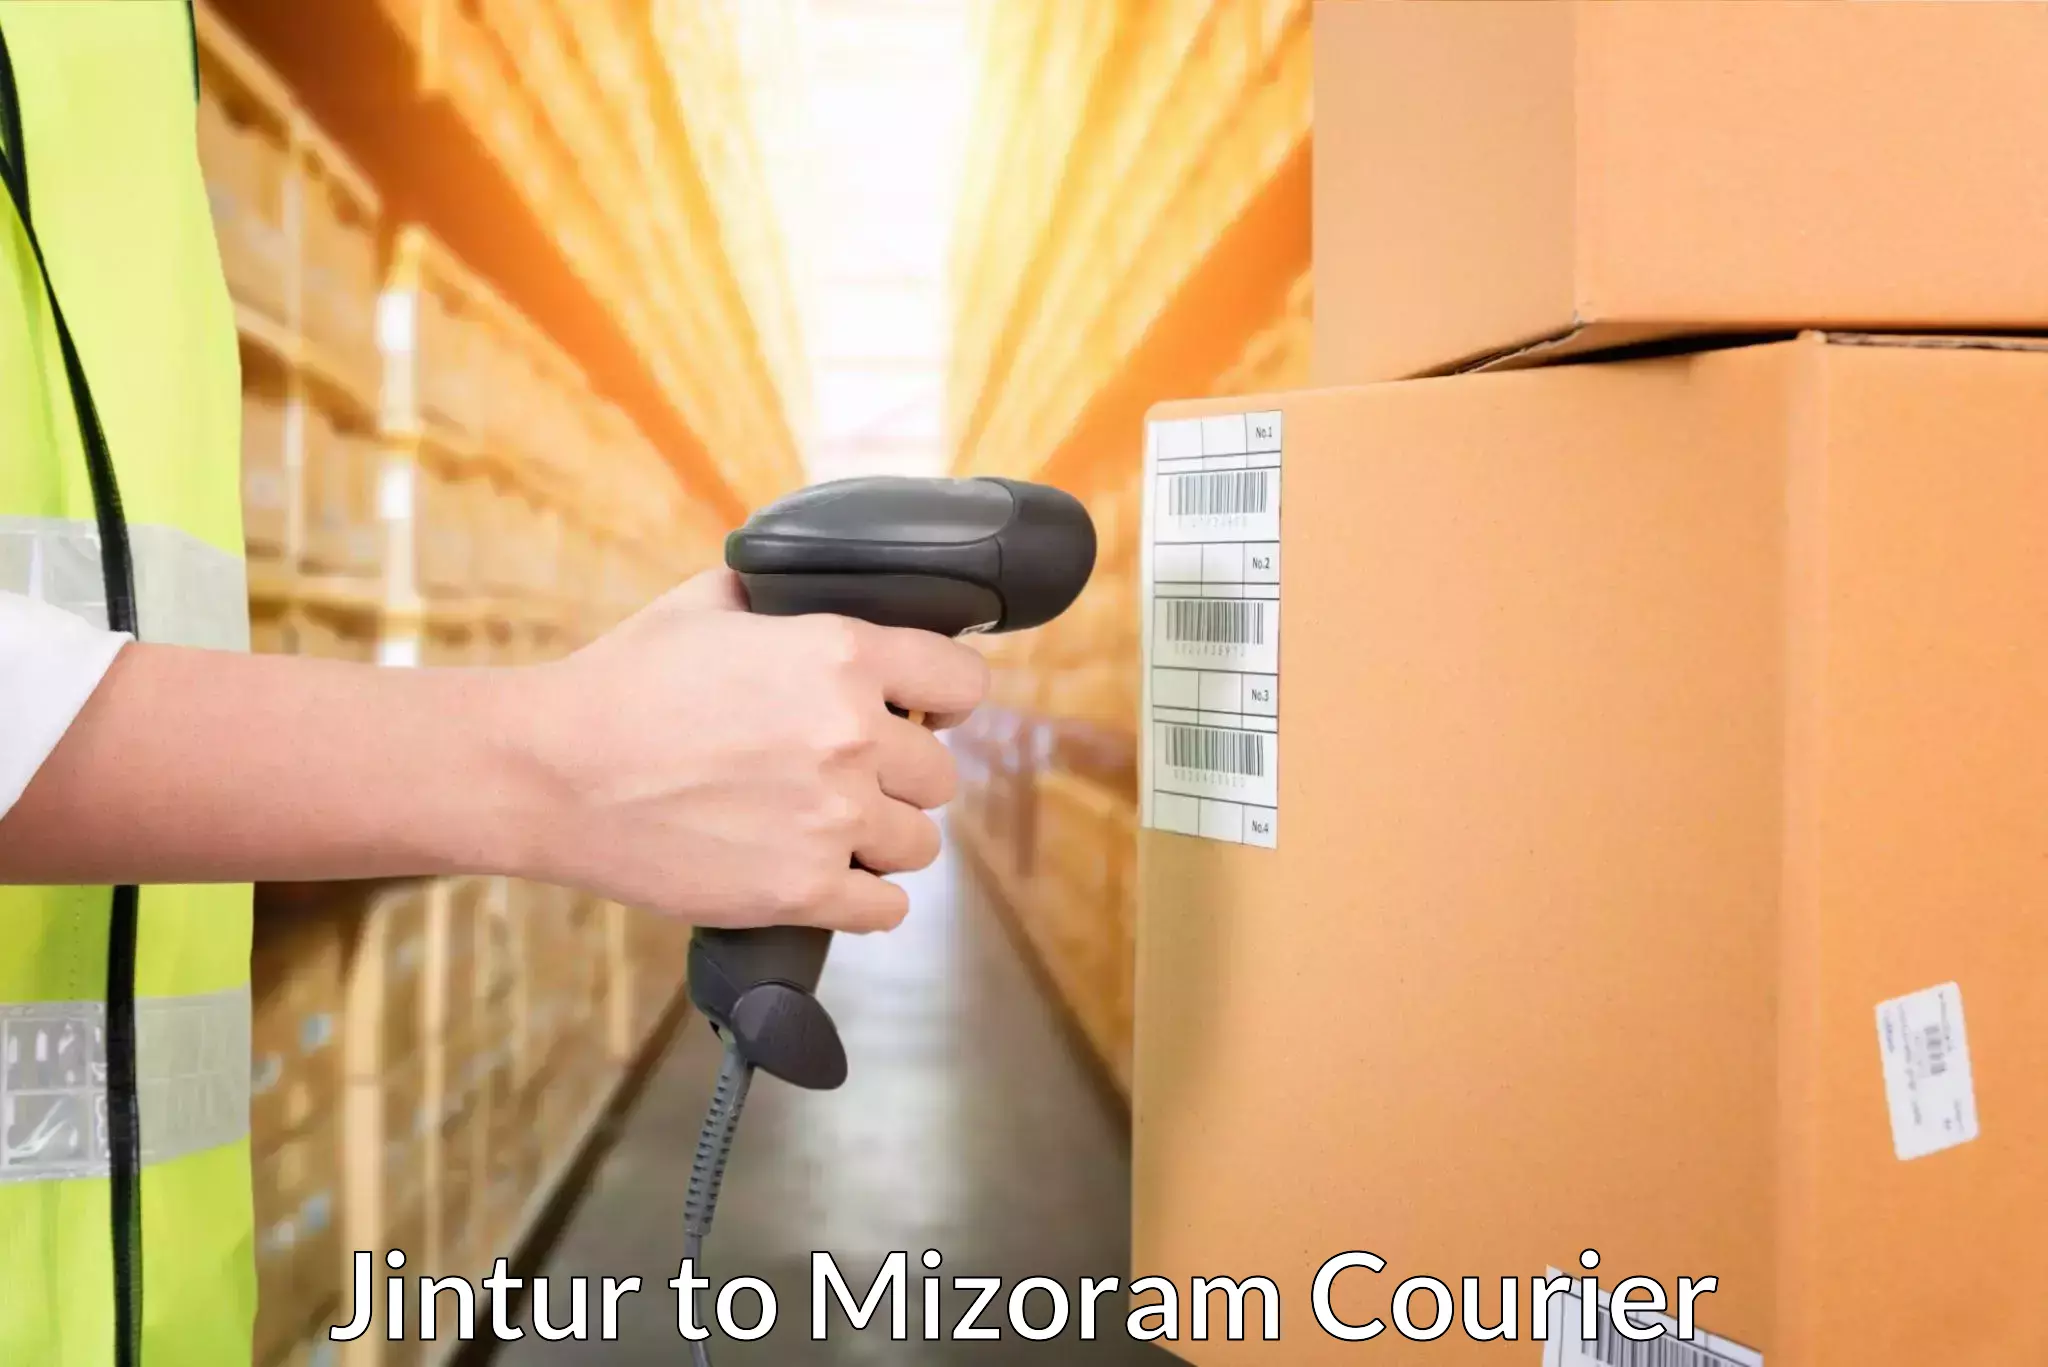 Express package handling Jintur to Mizoram